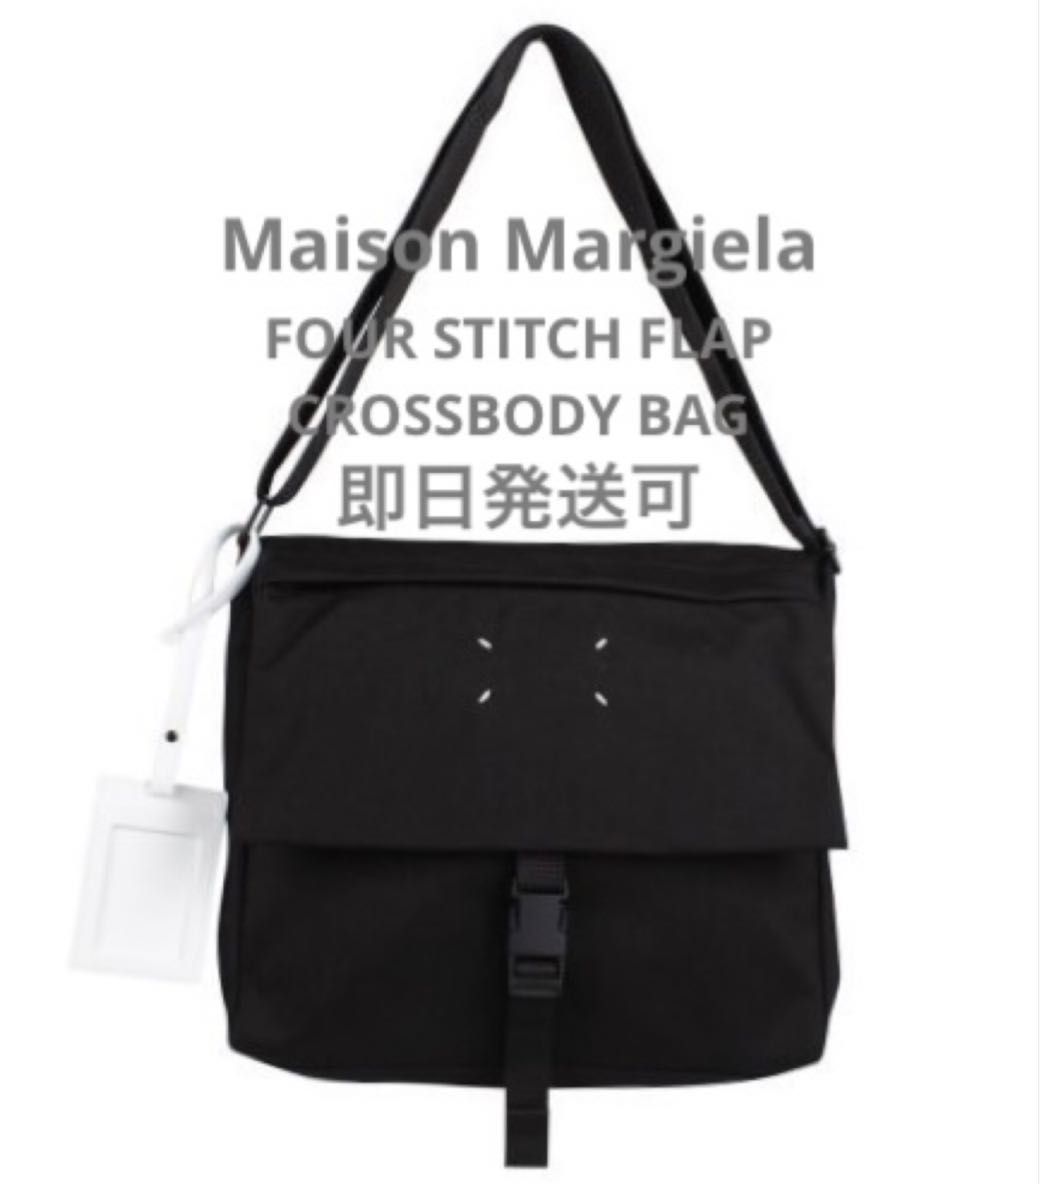 【新品未使用】Maison Margiela メゾンマルジェラ フォー ステッチ フラップ クロスボディ バッグ ショルダーバッグ